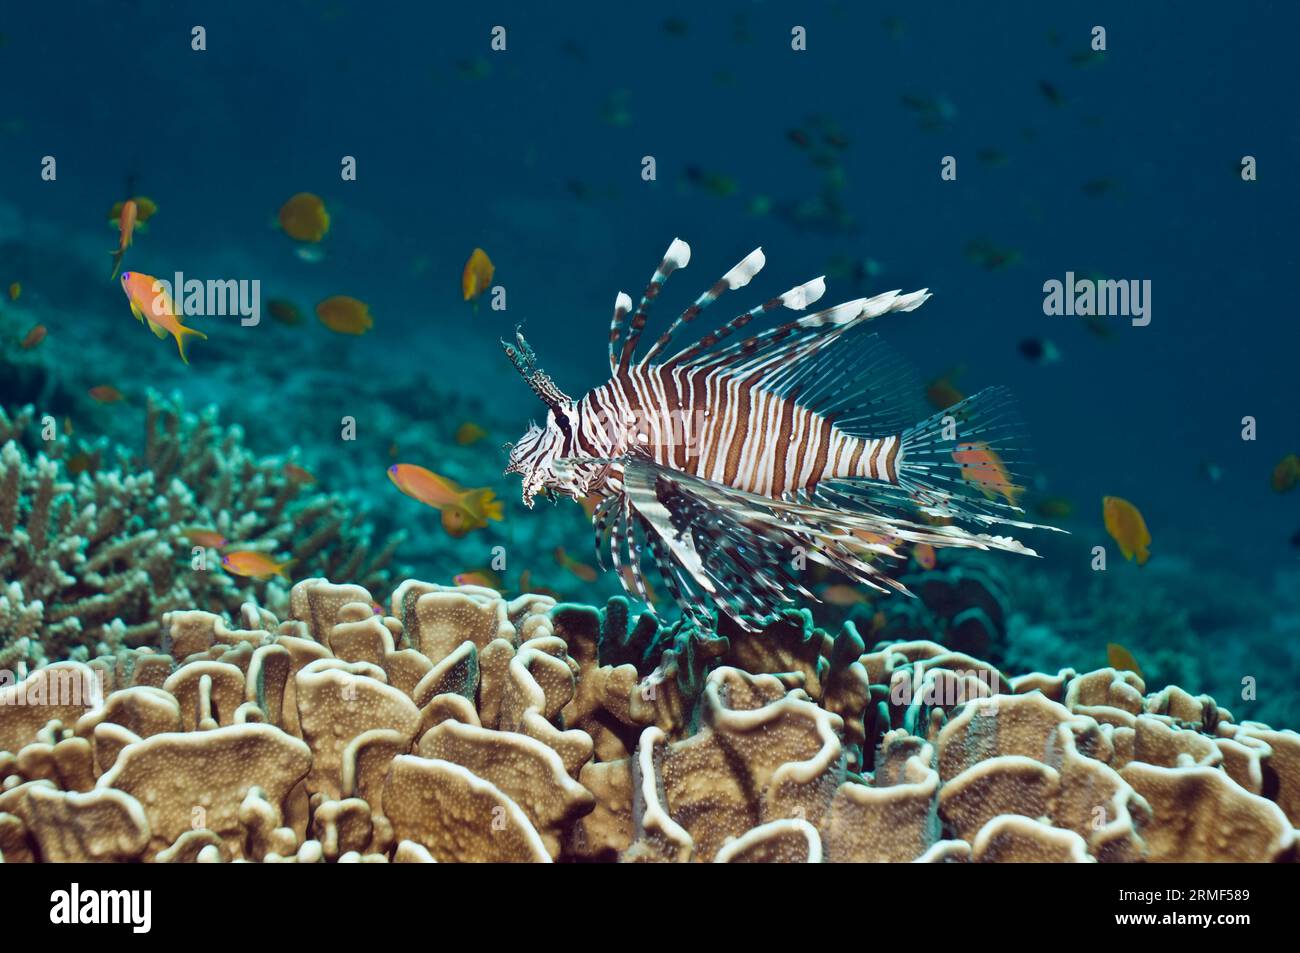 Poisson-lion (Pterois volitans) nageant sur le corail bleu (Heliopora coerulea). Seul l'intérieur de son squelette mort révèle la couleur bleue. Blue cora Banque D'Images